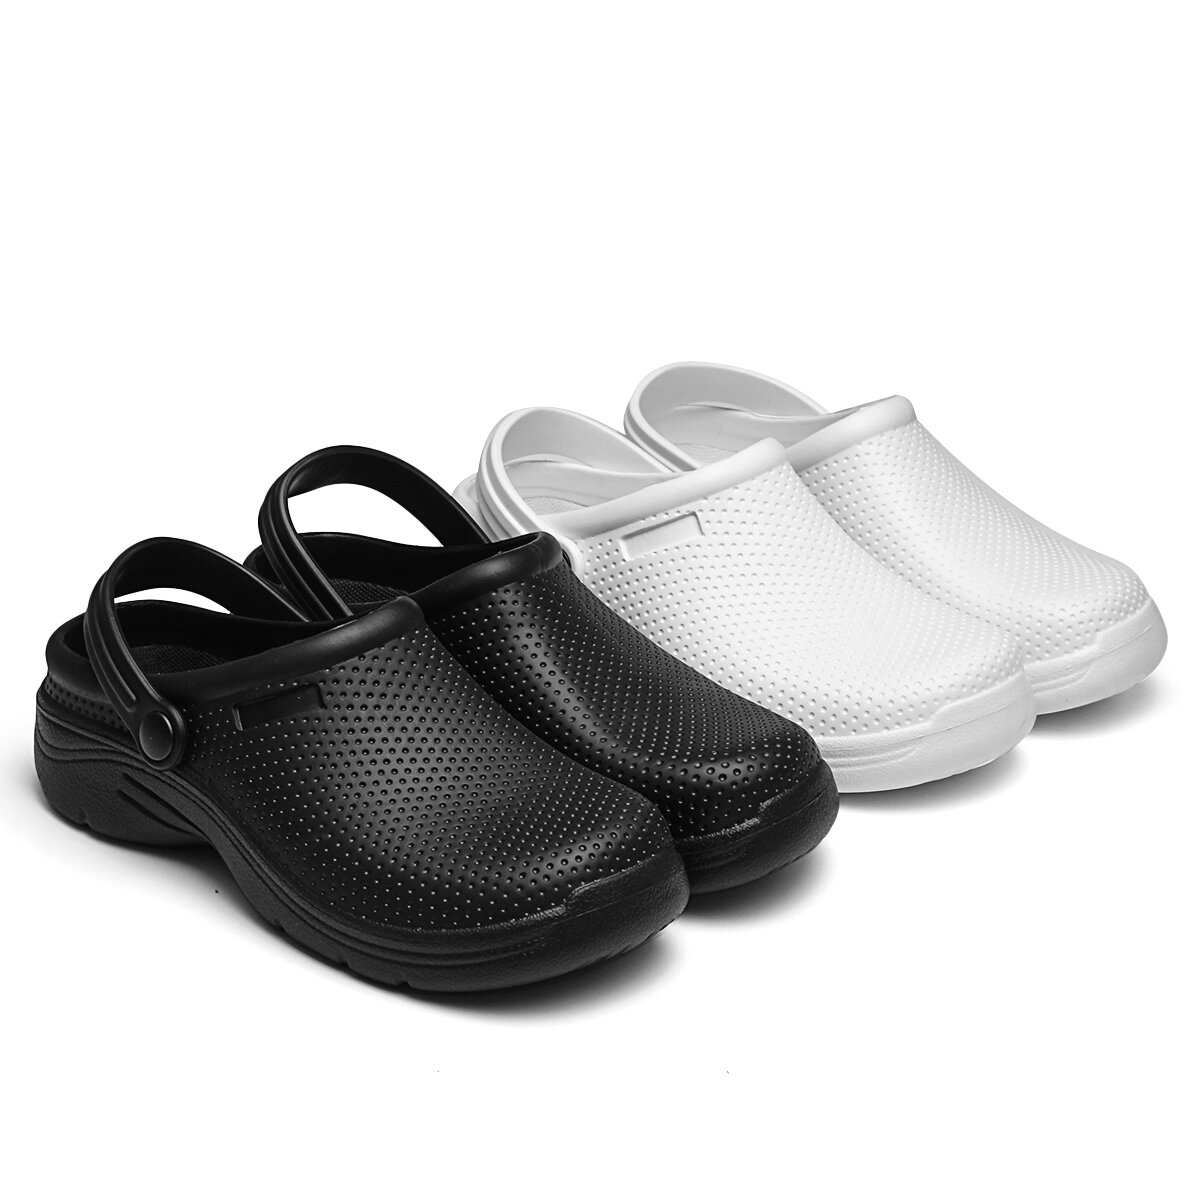 AtreGo EVA Verano Sandalias Zapatos de seguridad Impermeable Antideslizantes al aire libre Interior Playa Zapatos para mujeres y hombres